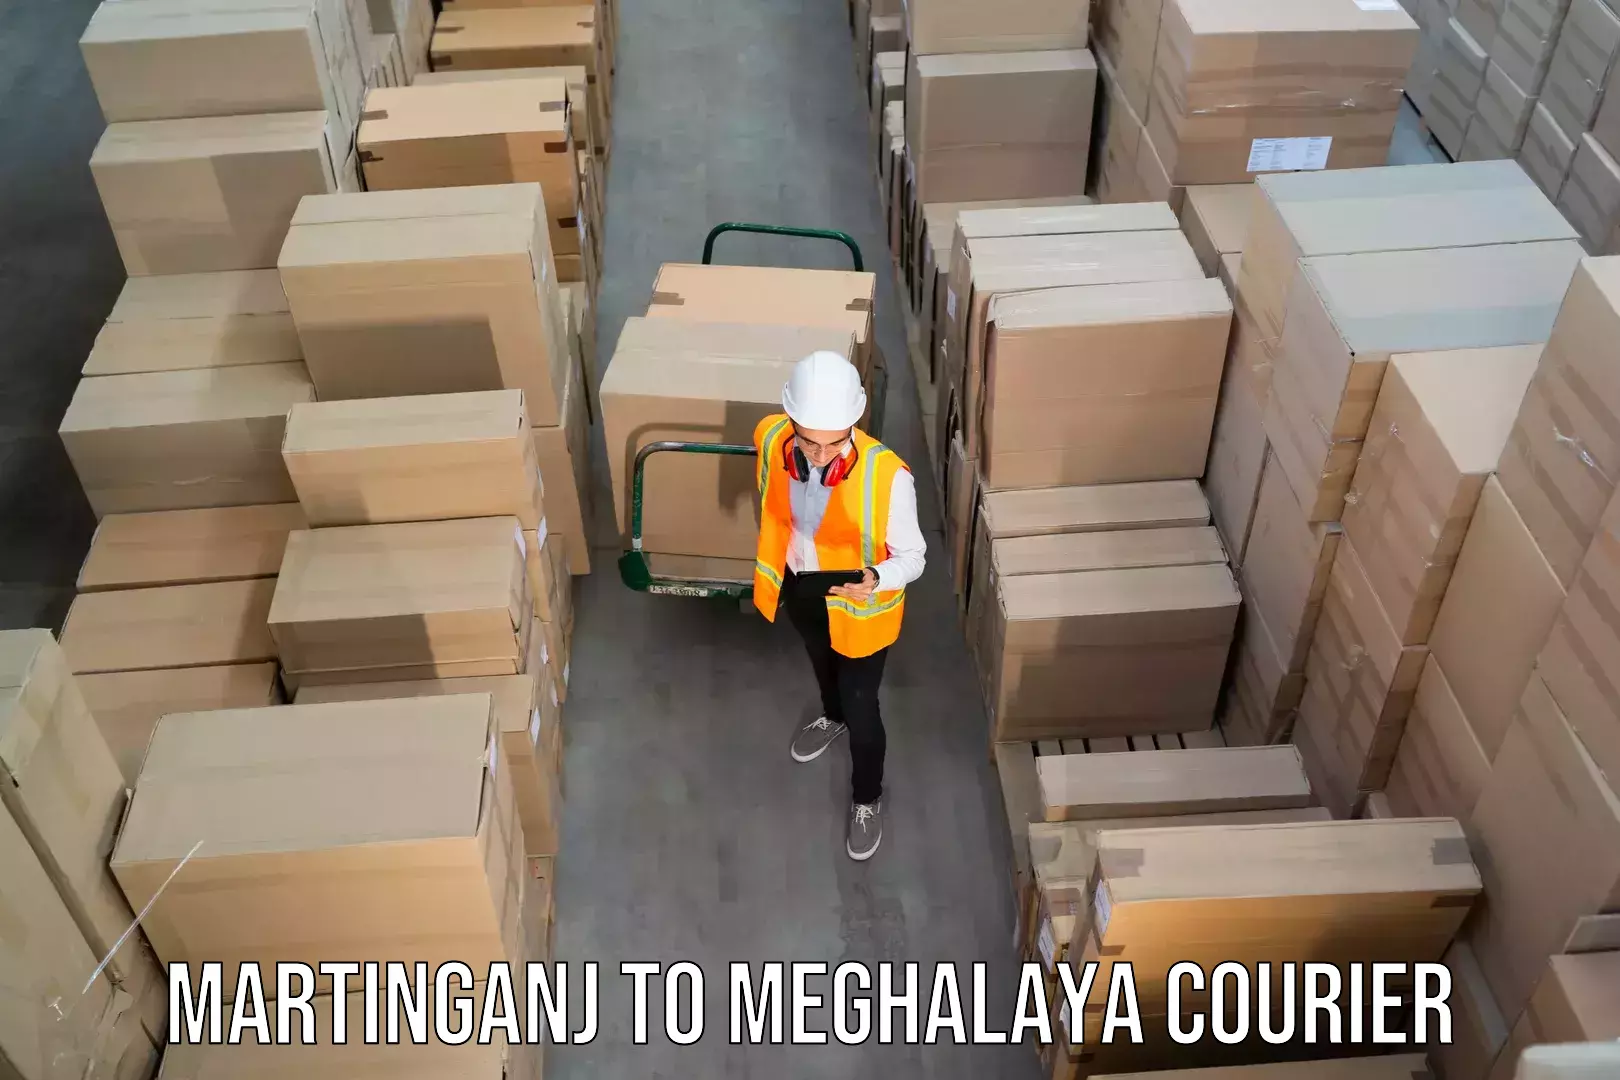 Efficient parcel service Martinganj to Nongpoh